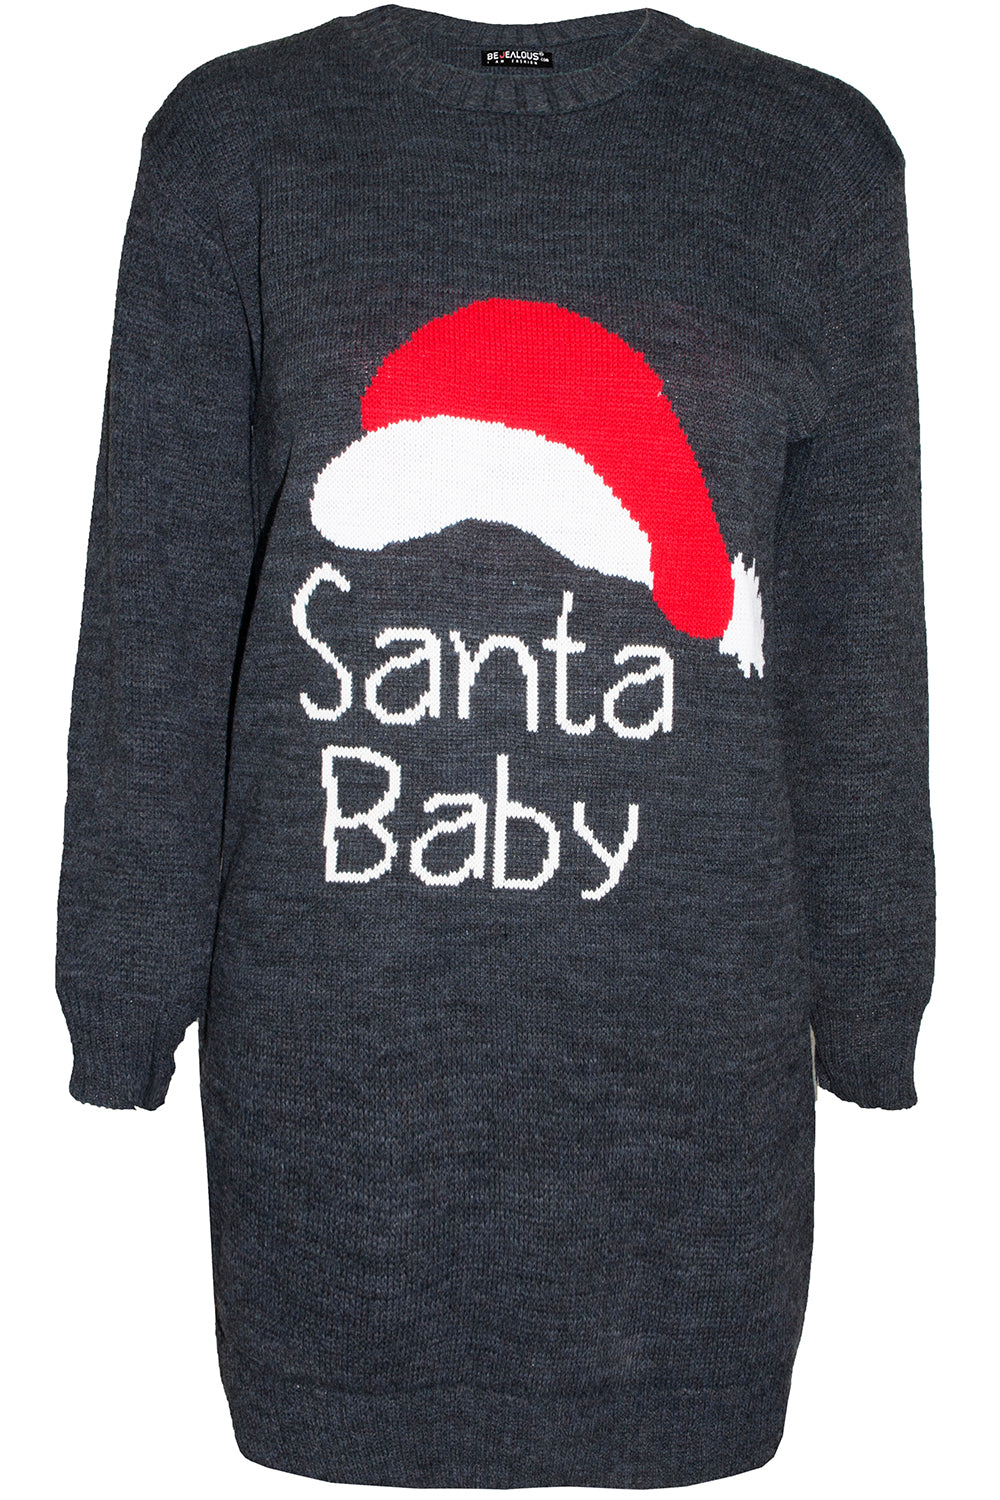 Santa Baby Slogan Print Jumper Dress - bejealous-com